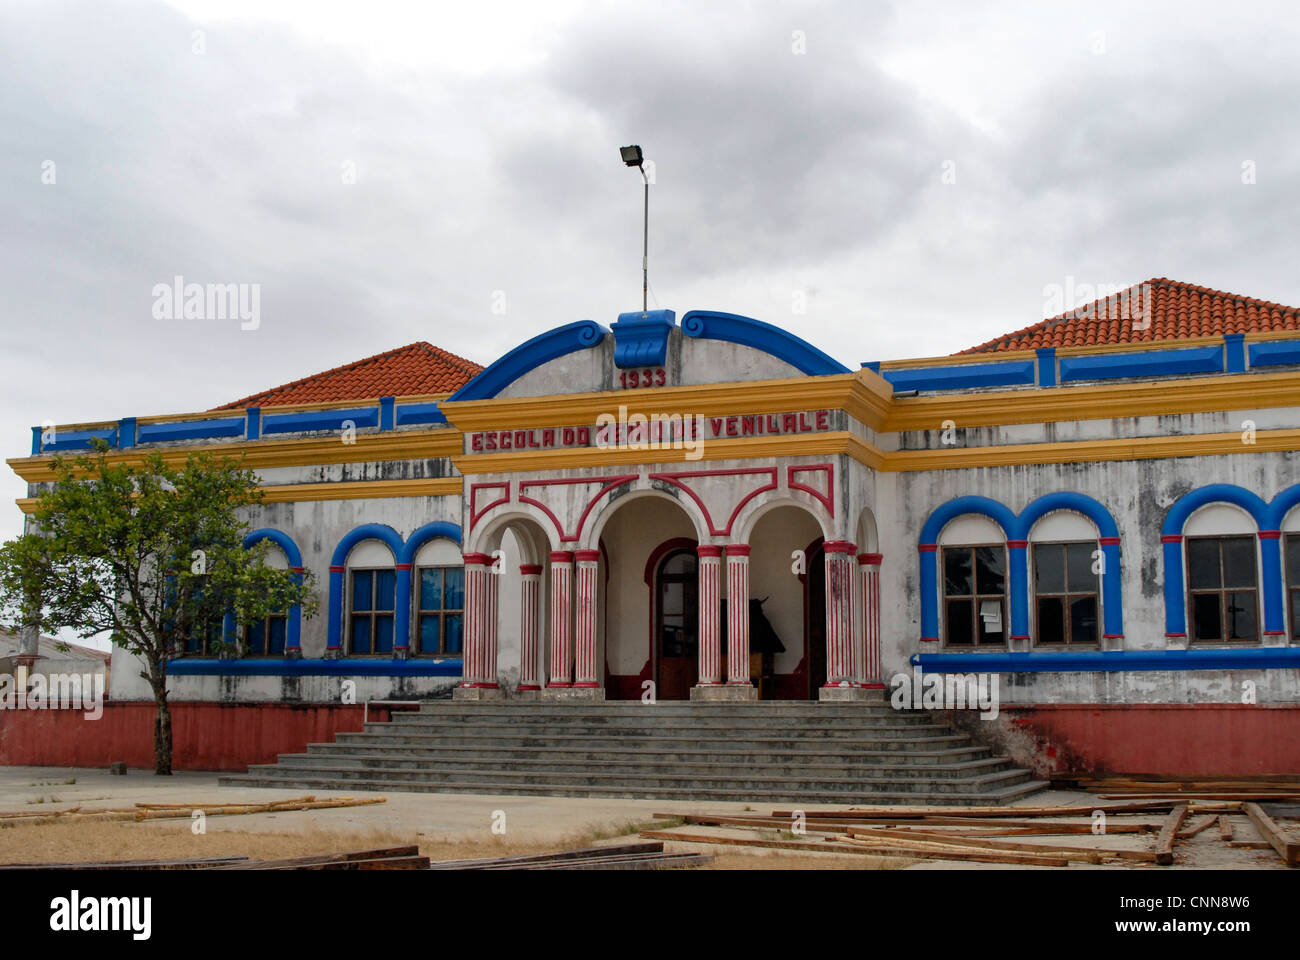 Escola do Reino de Venilale, un esempio di Portoghese architettura coloniale nel distretto di Baucau a Timor orientale. Foto Stock